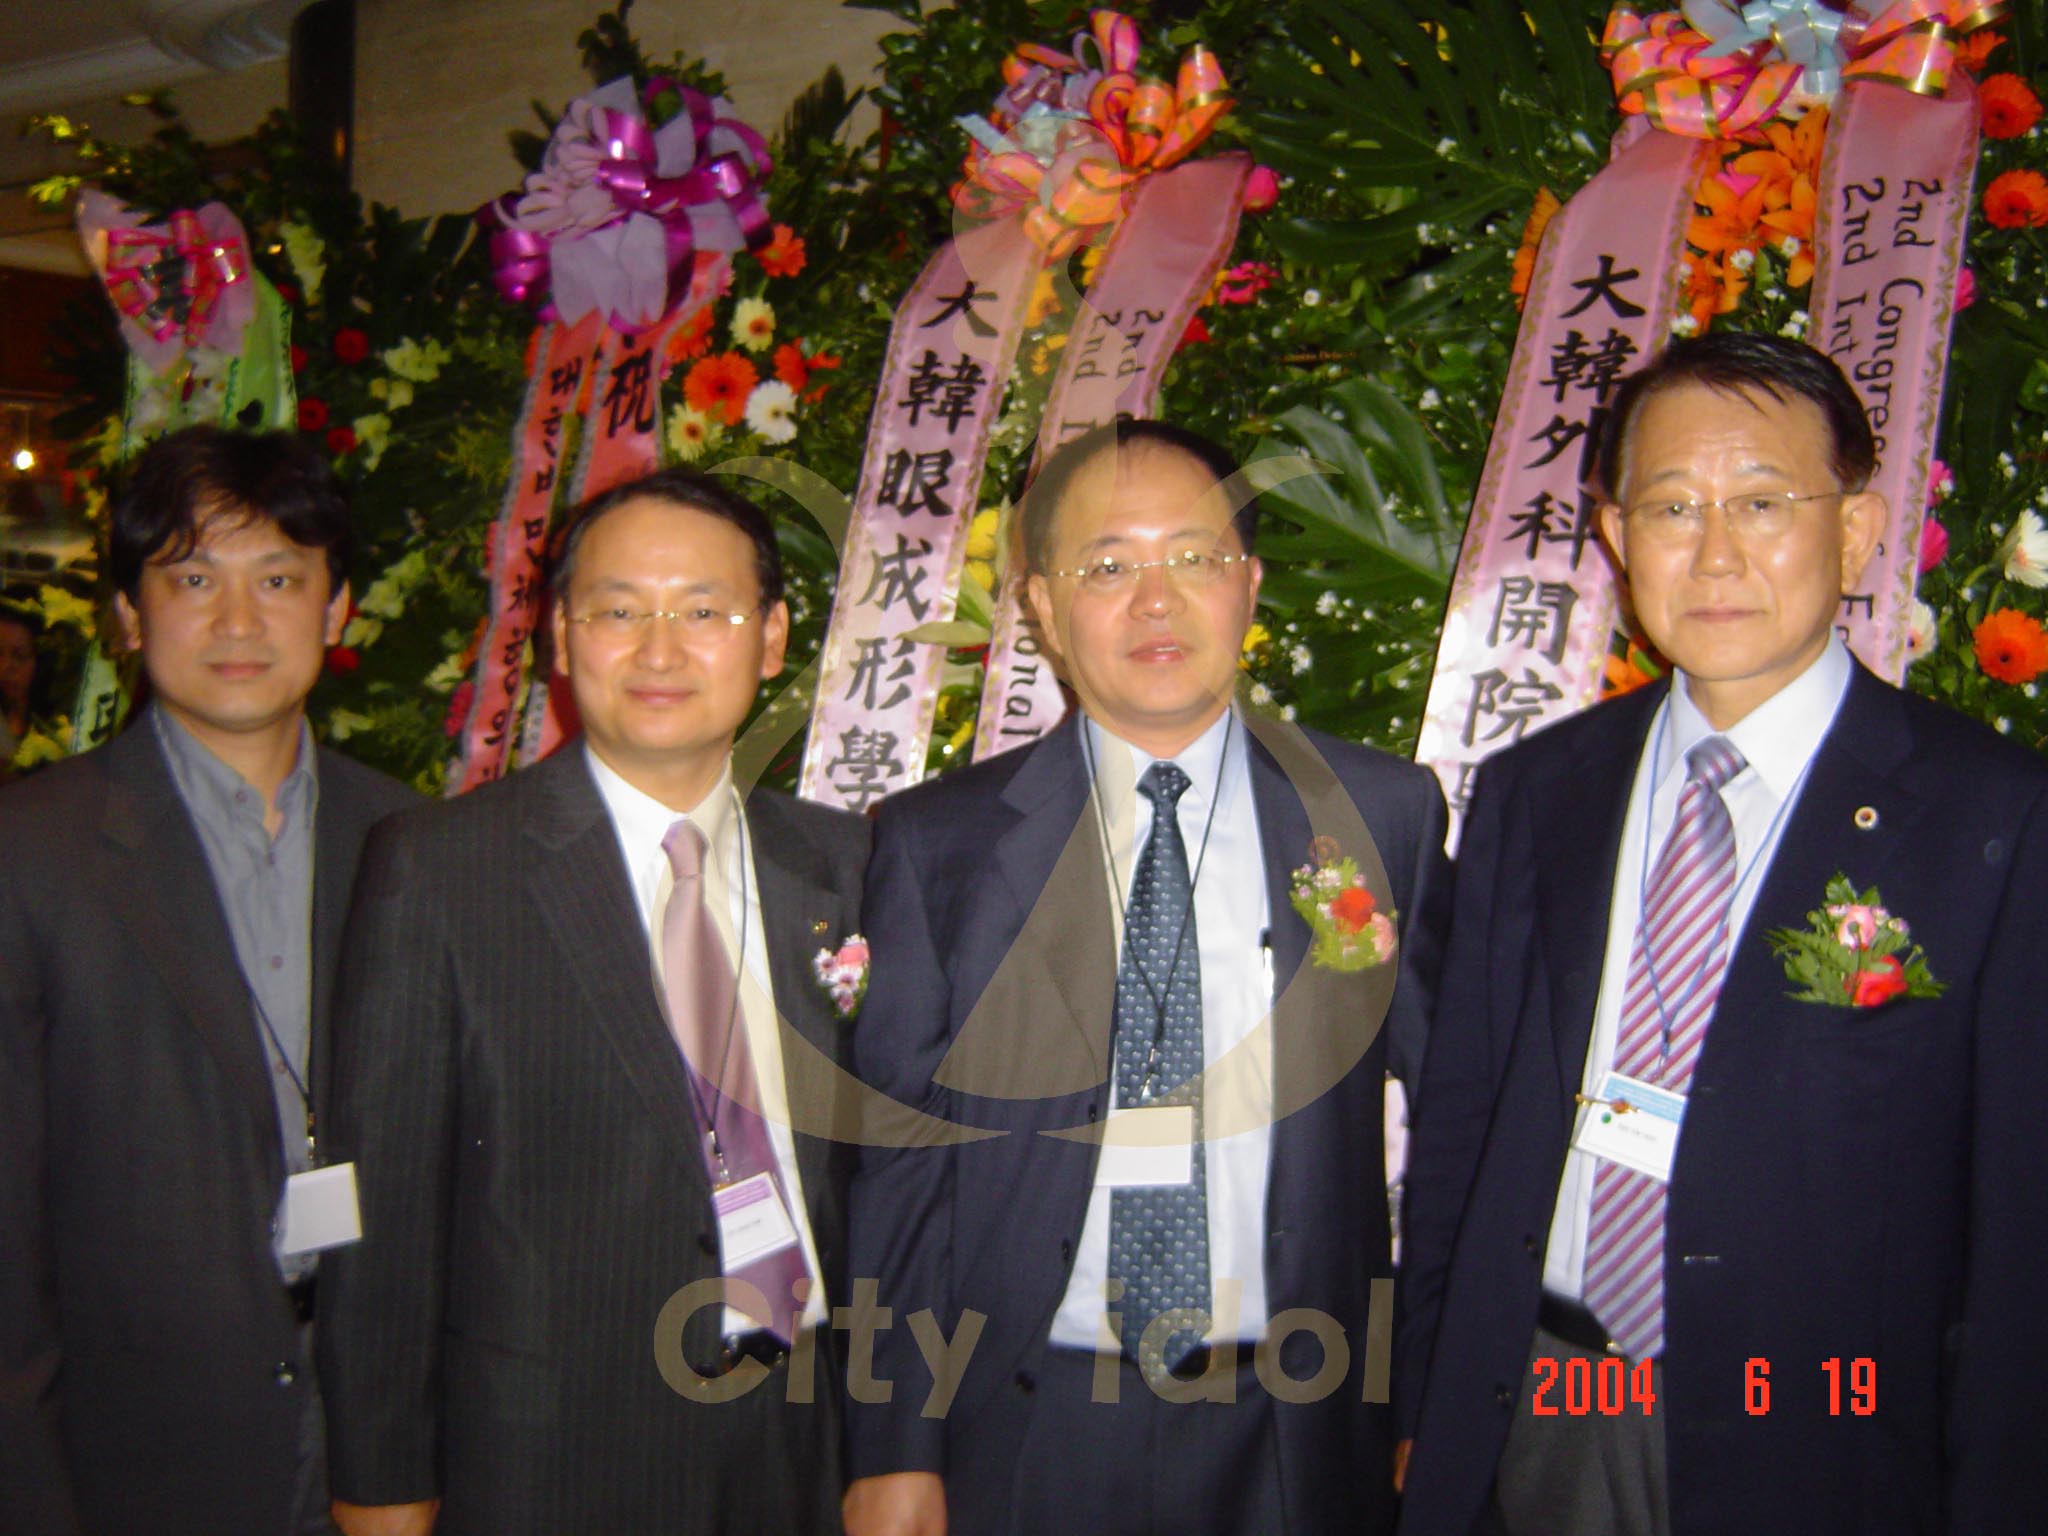 2004-06-19 大韓美容外科醫學會-與郝老師及兩位韓國學會會長合照